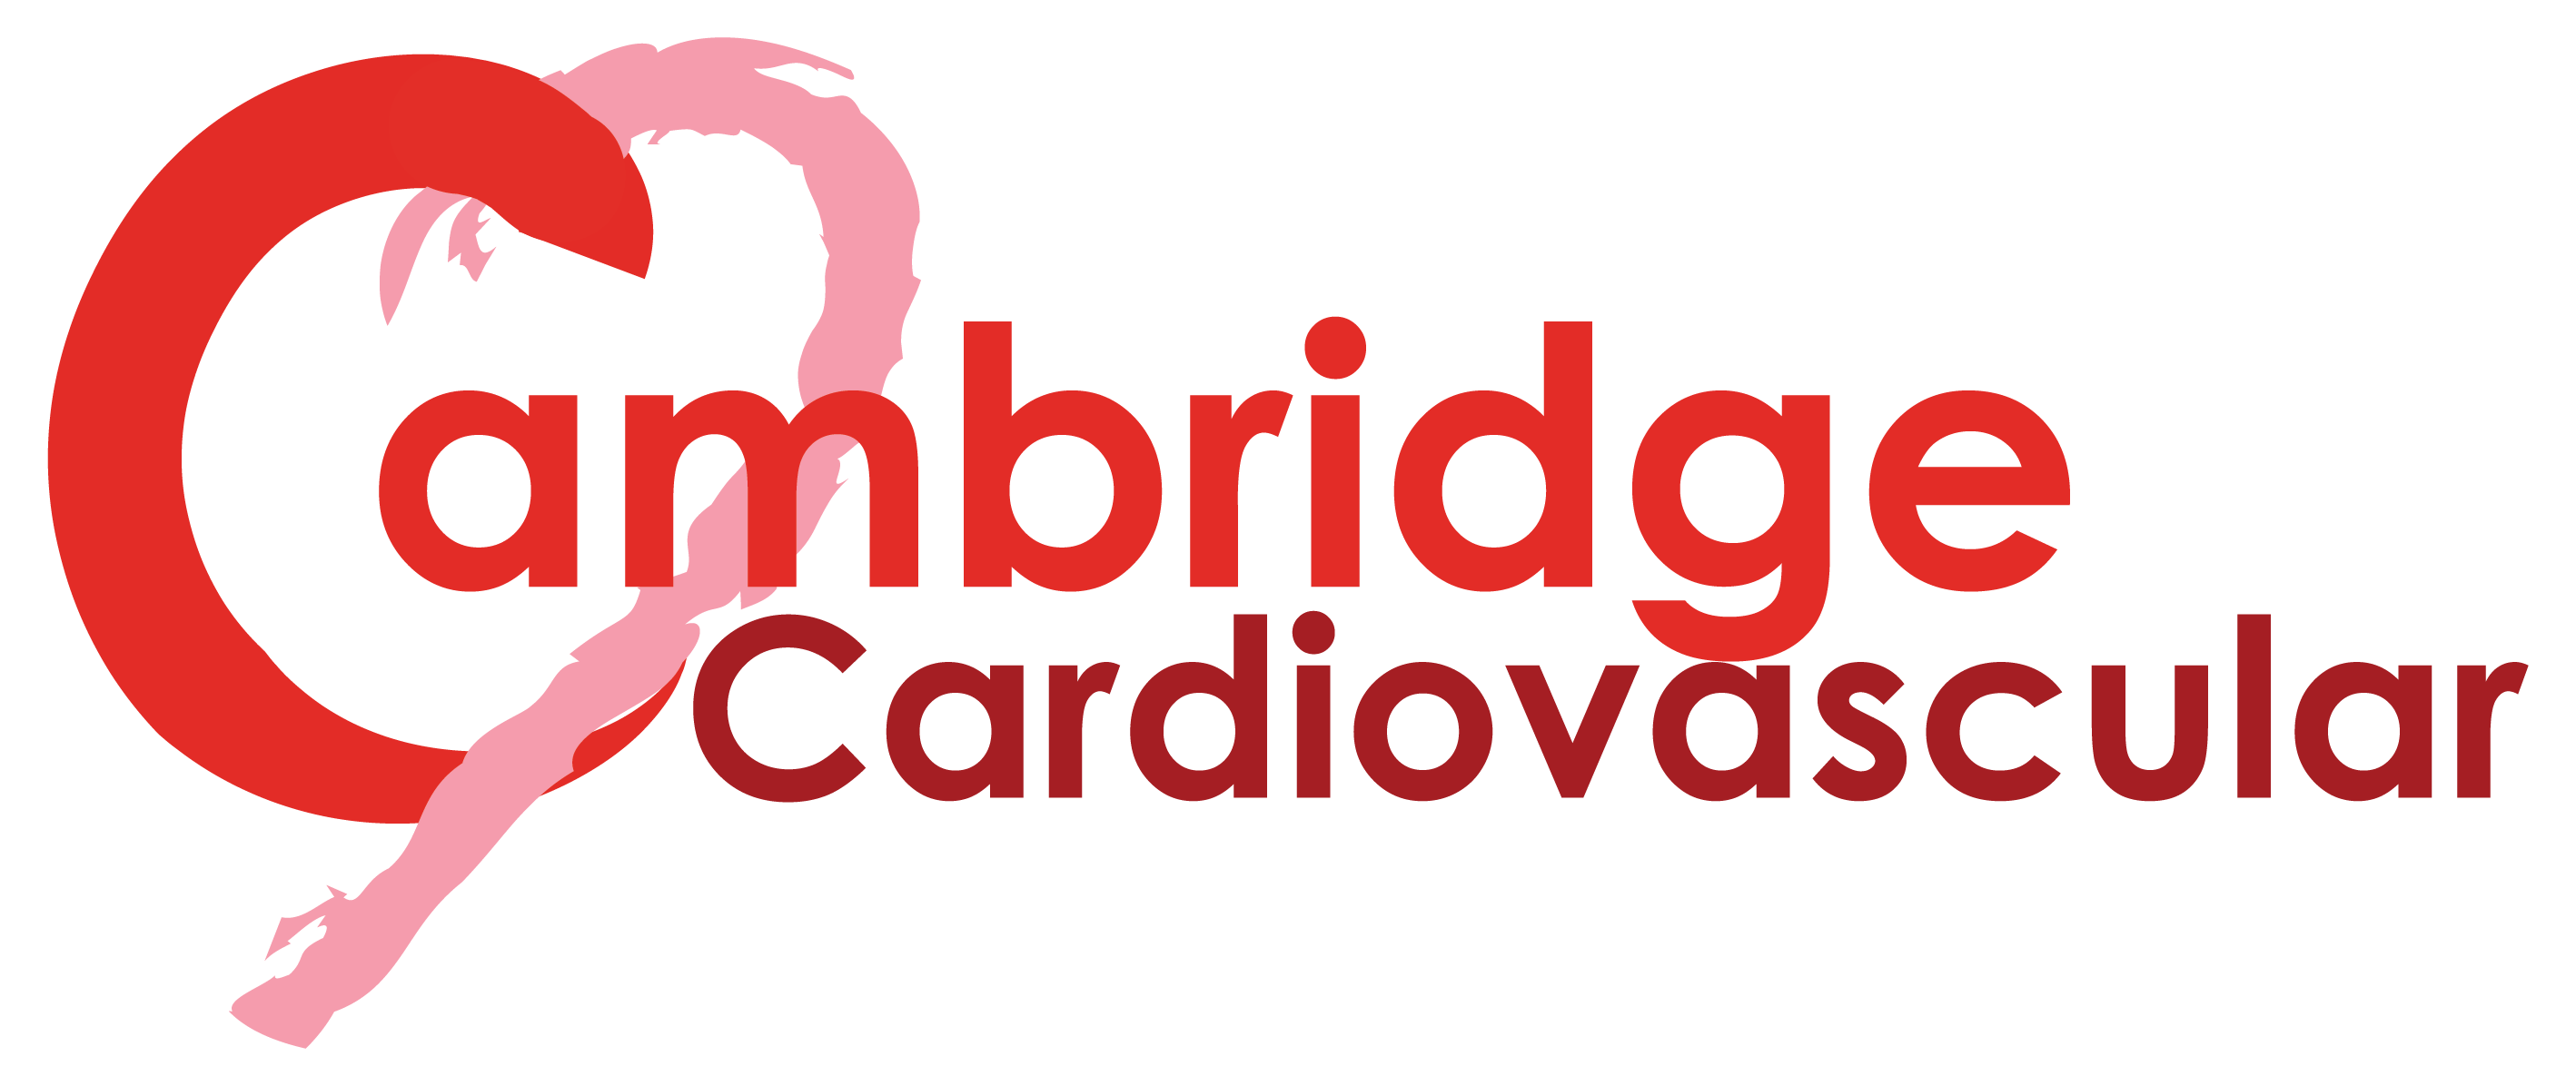 Pink Transparent Logo - Cambridge Cardiovascular logo - transparent